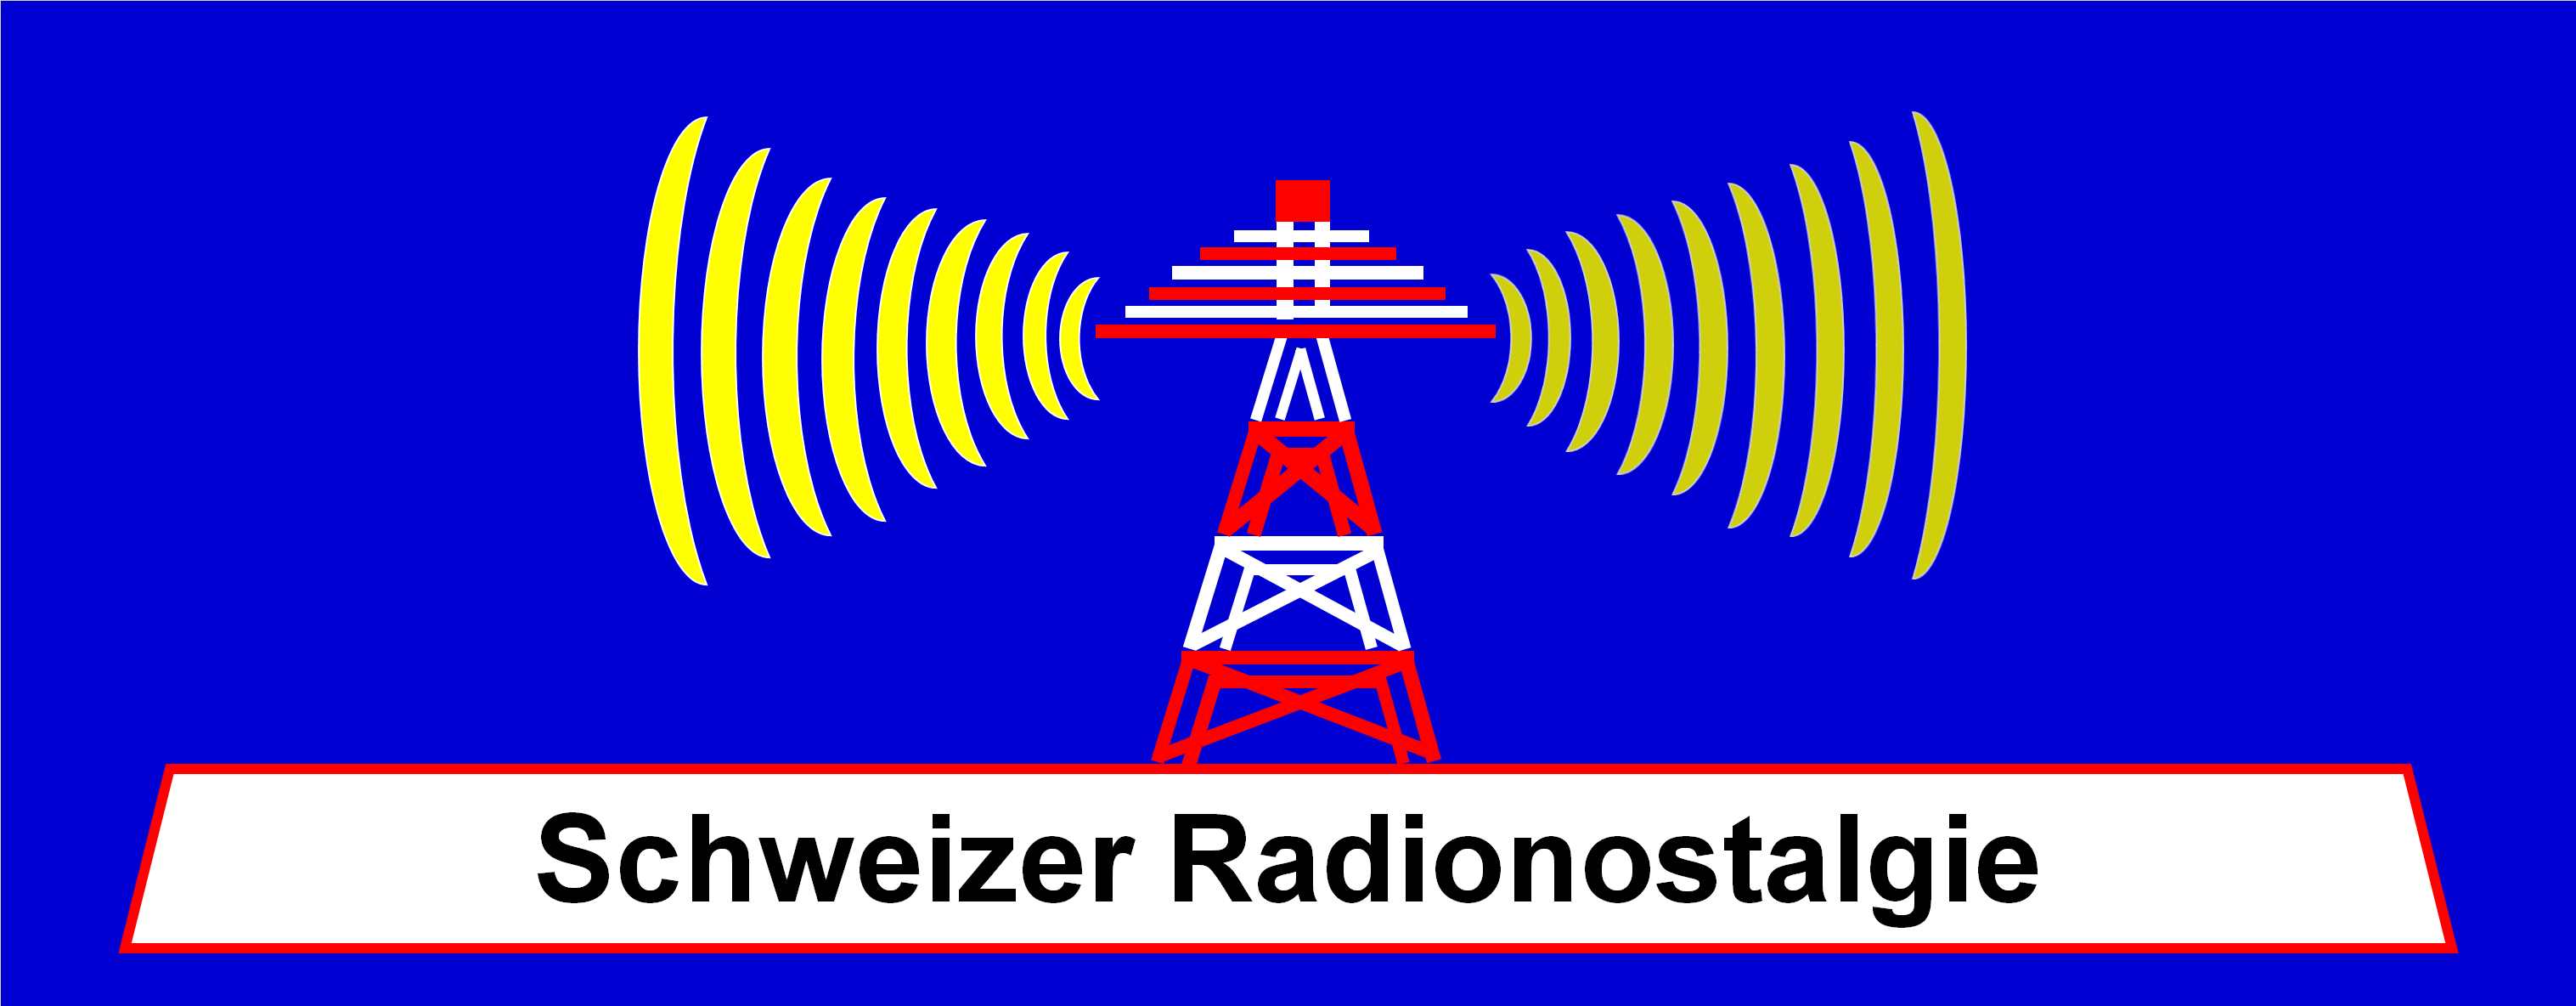 Schweizer Radionostalgie